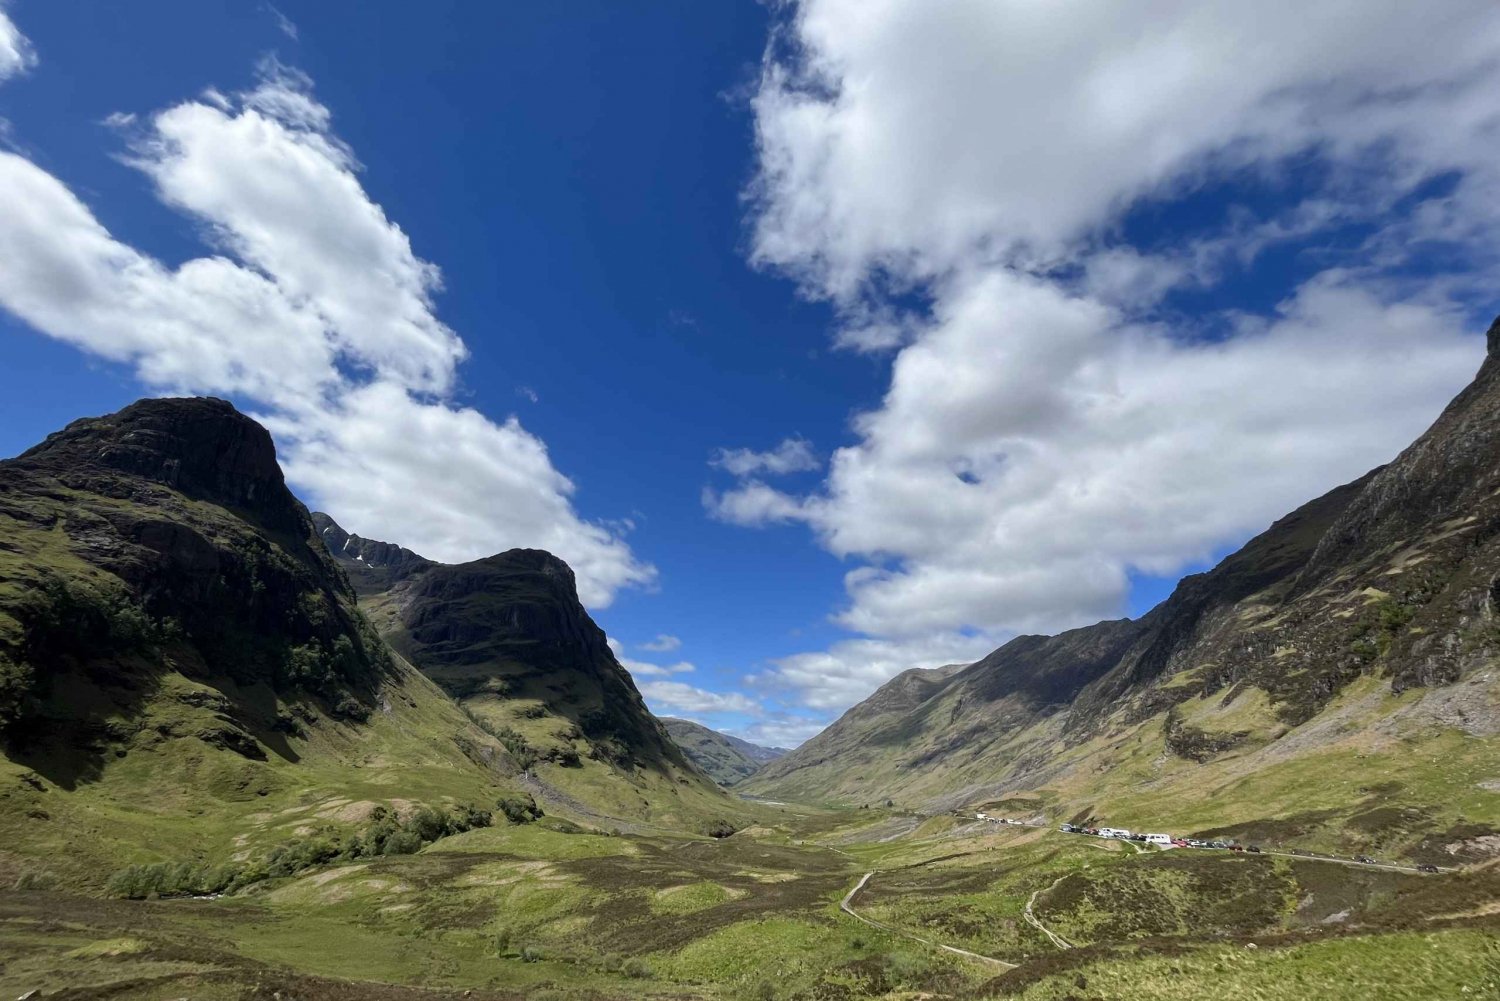 Fra Edinburgh: Privat tur til Loch Ness, Glencoe og højlandet